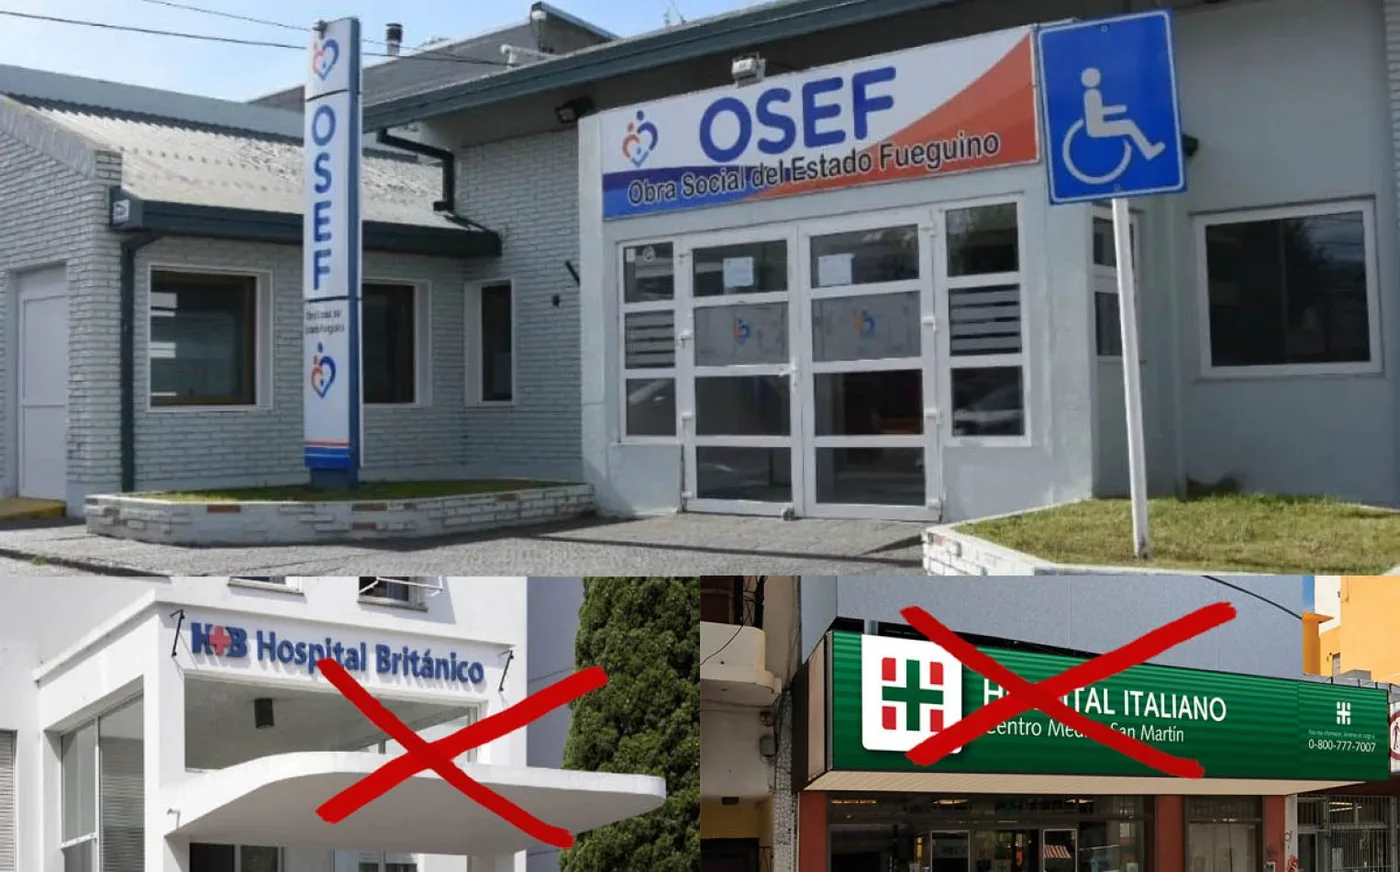 La Osef se quedó con servicios de los hospitales Italiano y Británico